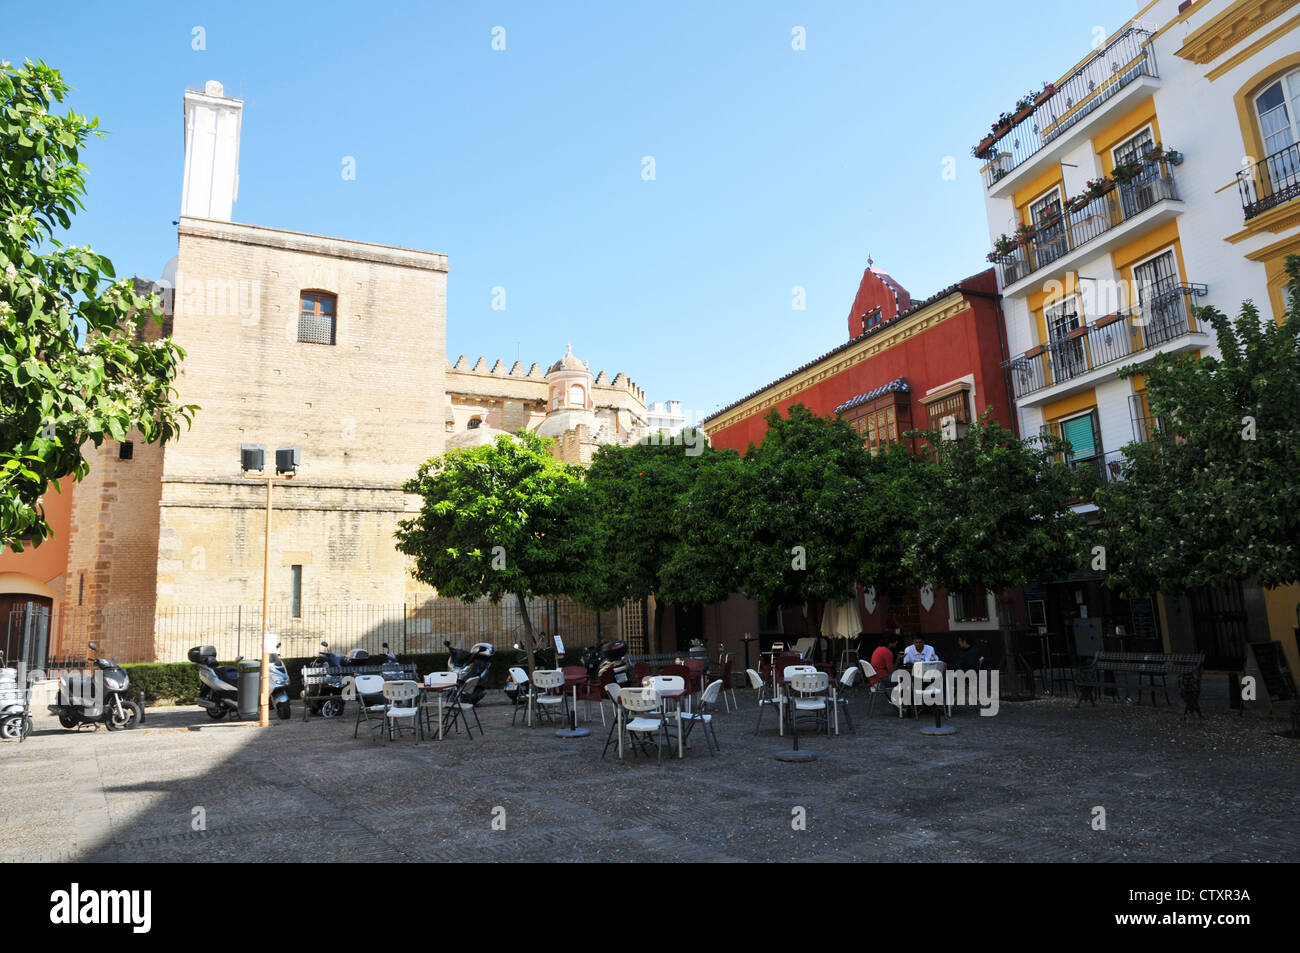 Le persone al di fuori seduta in piazza, chiesa, stile classico spagnolo case, centro di Siviglia, Spagna. Foto Stock